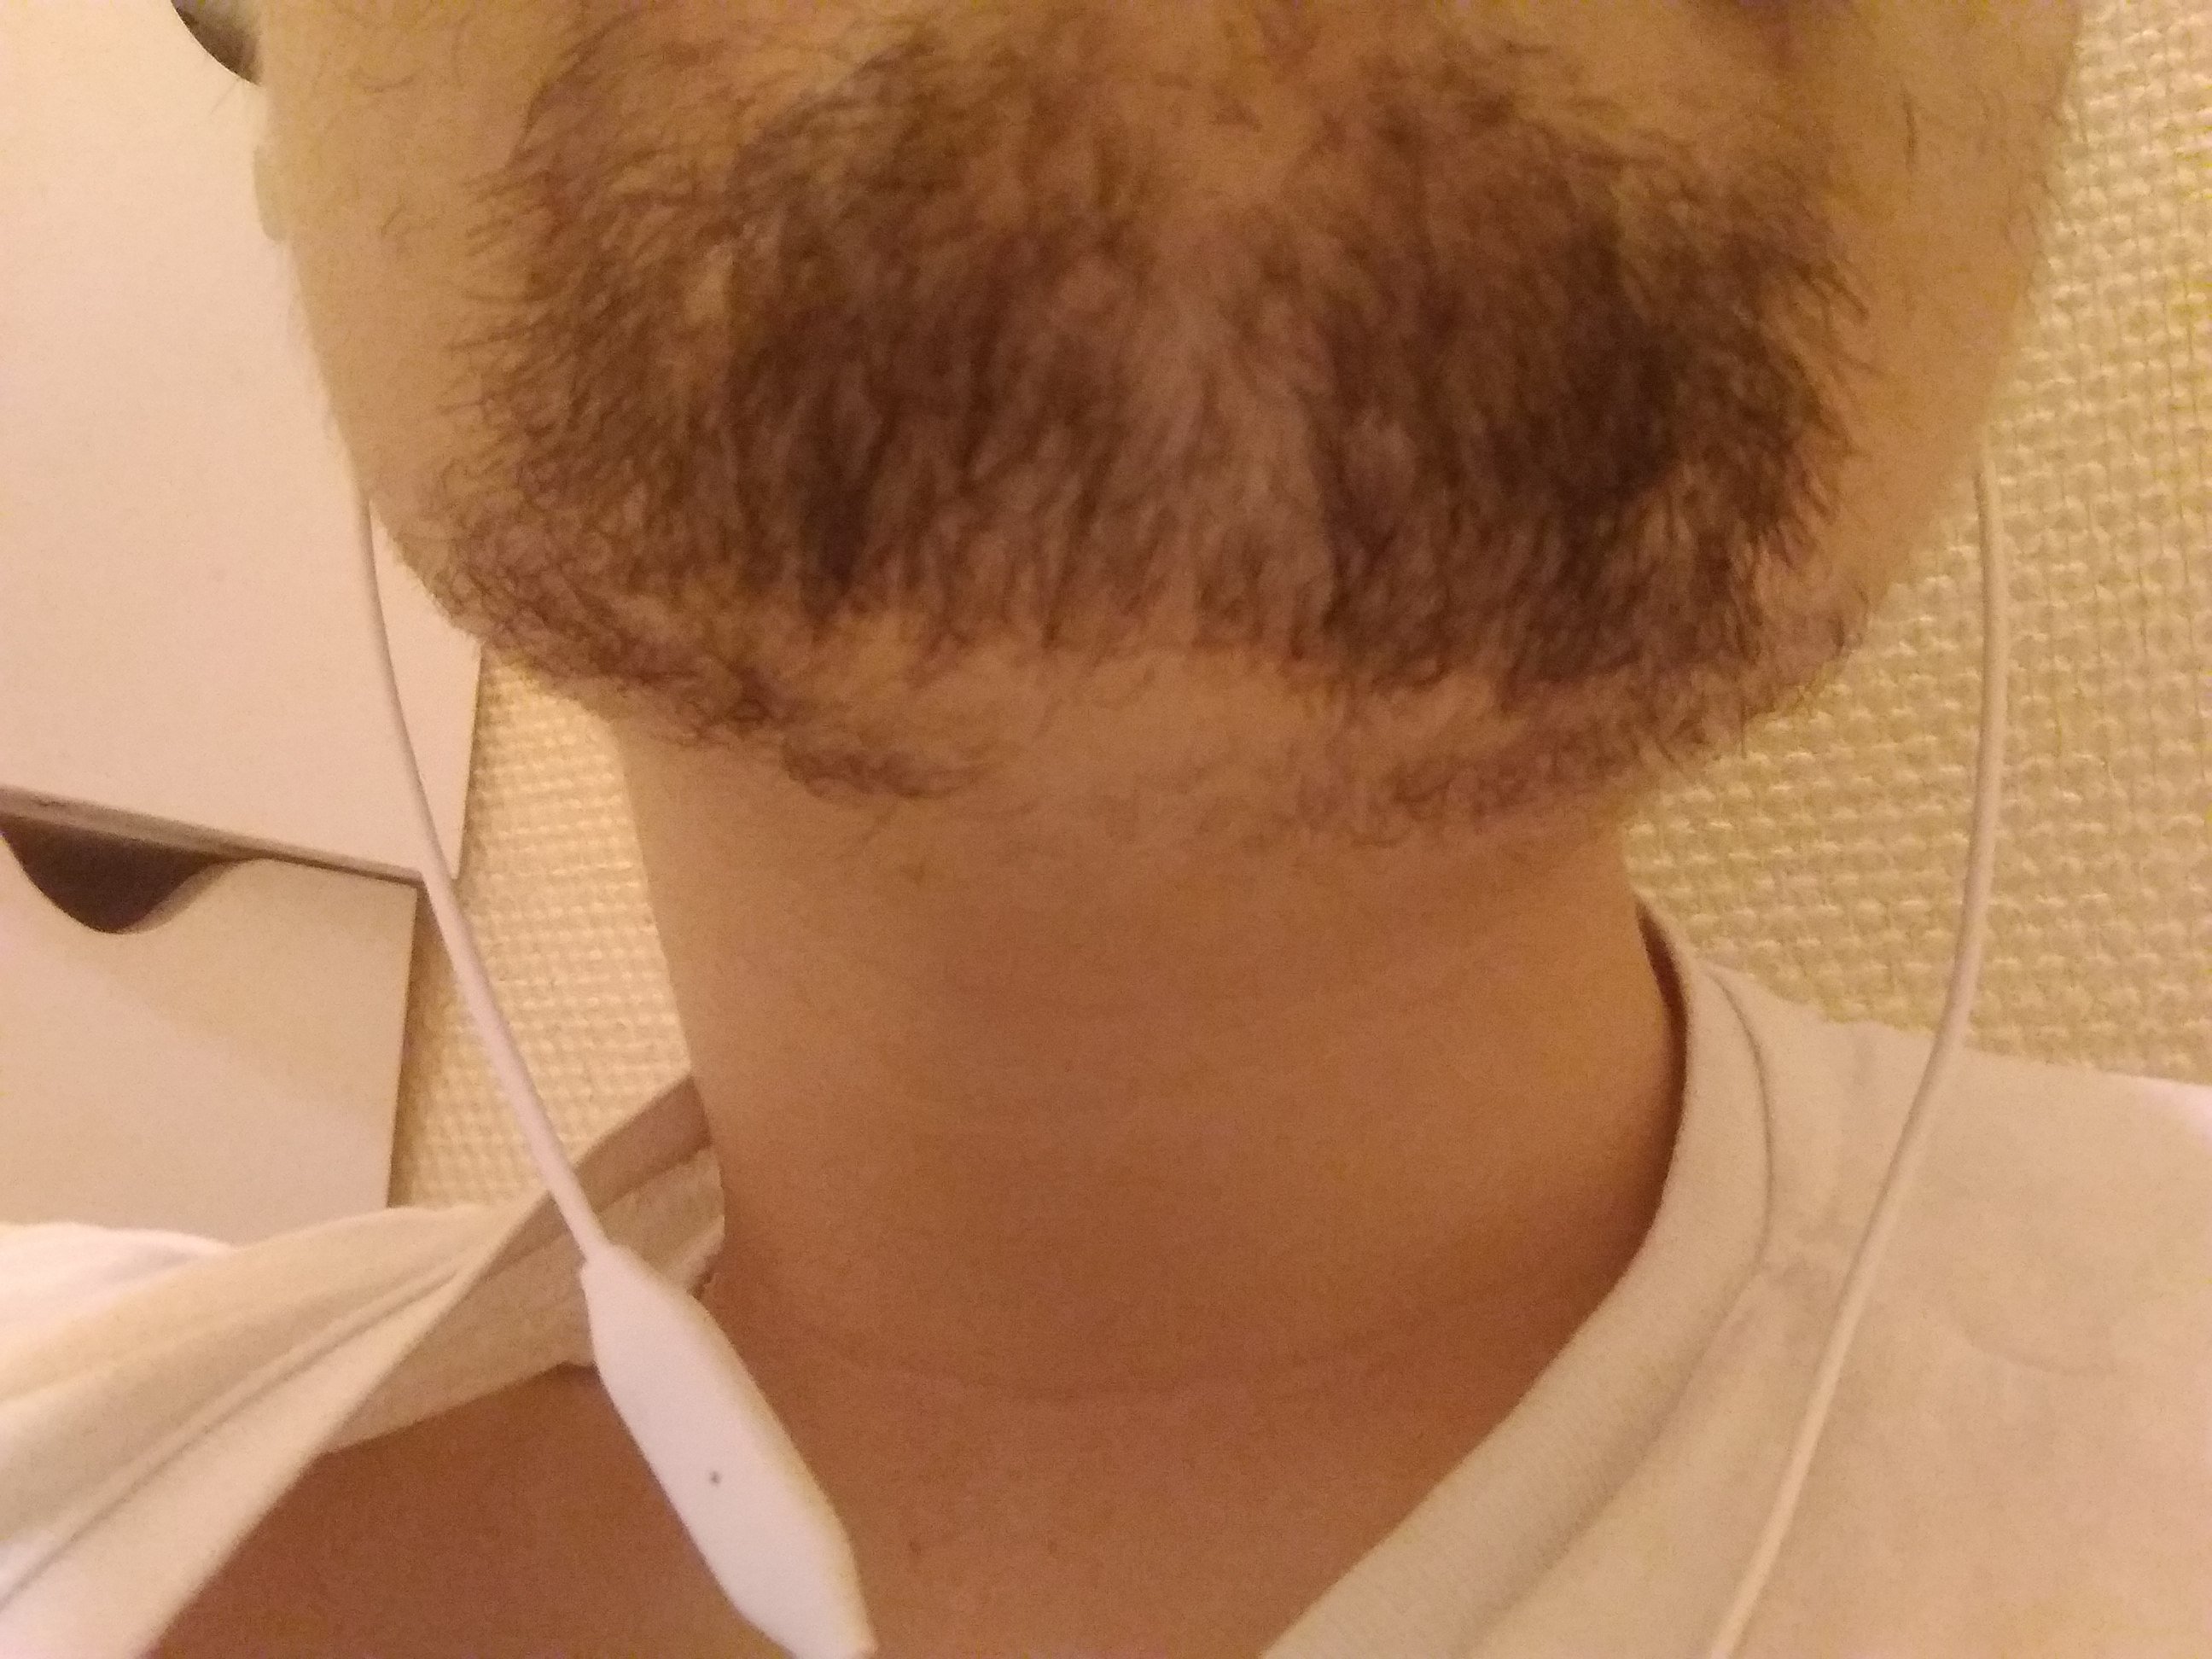 Problème de barbe sur le forum Blabla 18-25 ans - 17-02-2018 03:53 ...